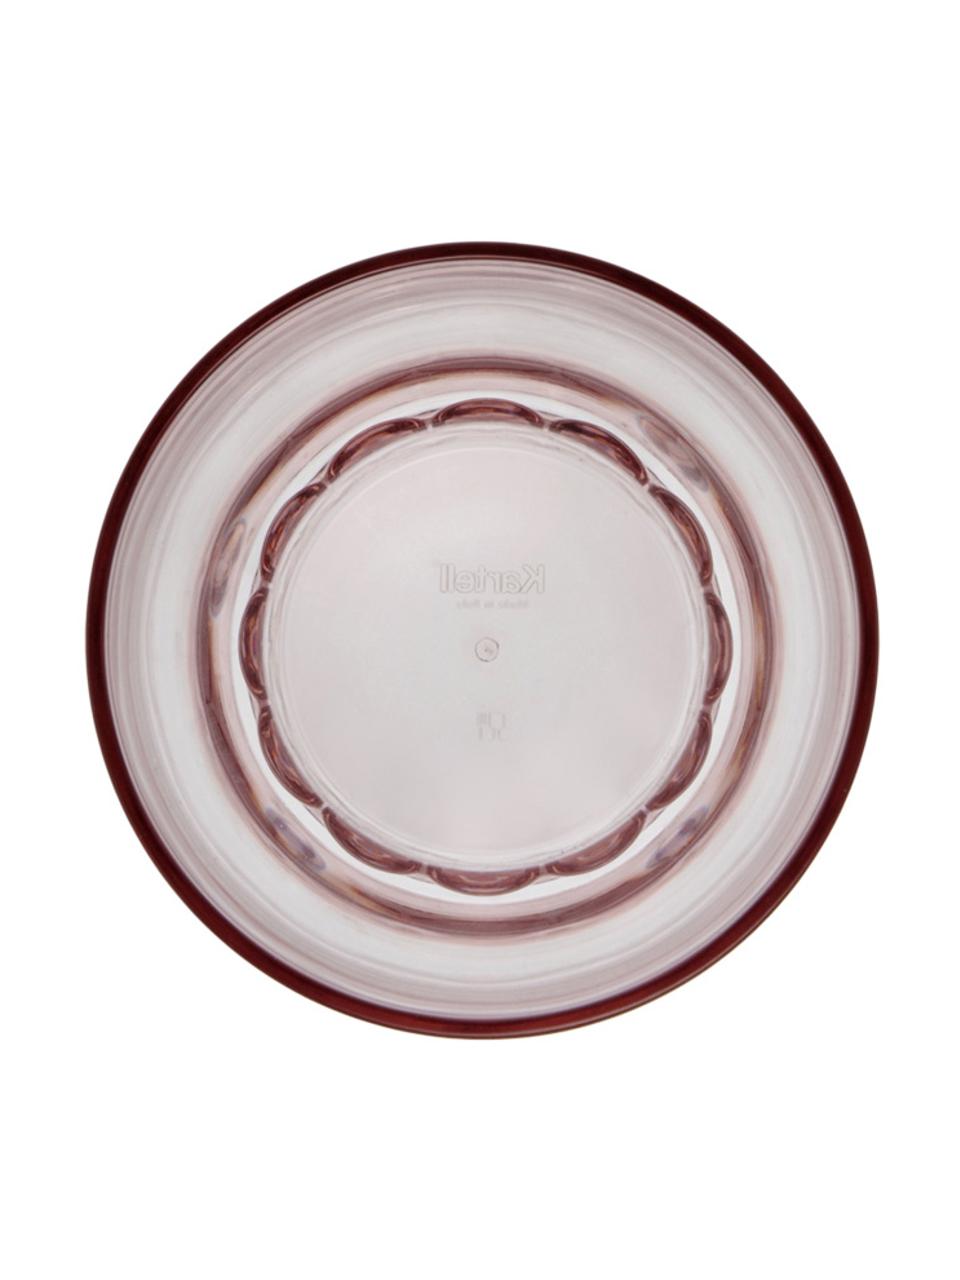 Szklanka Jellies, 4 szt., Tworzywo sztuczne, Jasny różowy, transparentny, Ø 9 x W 13 cm, 460 ml